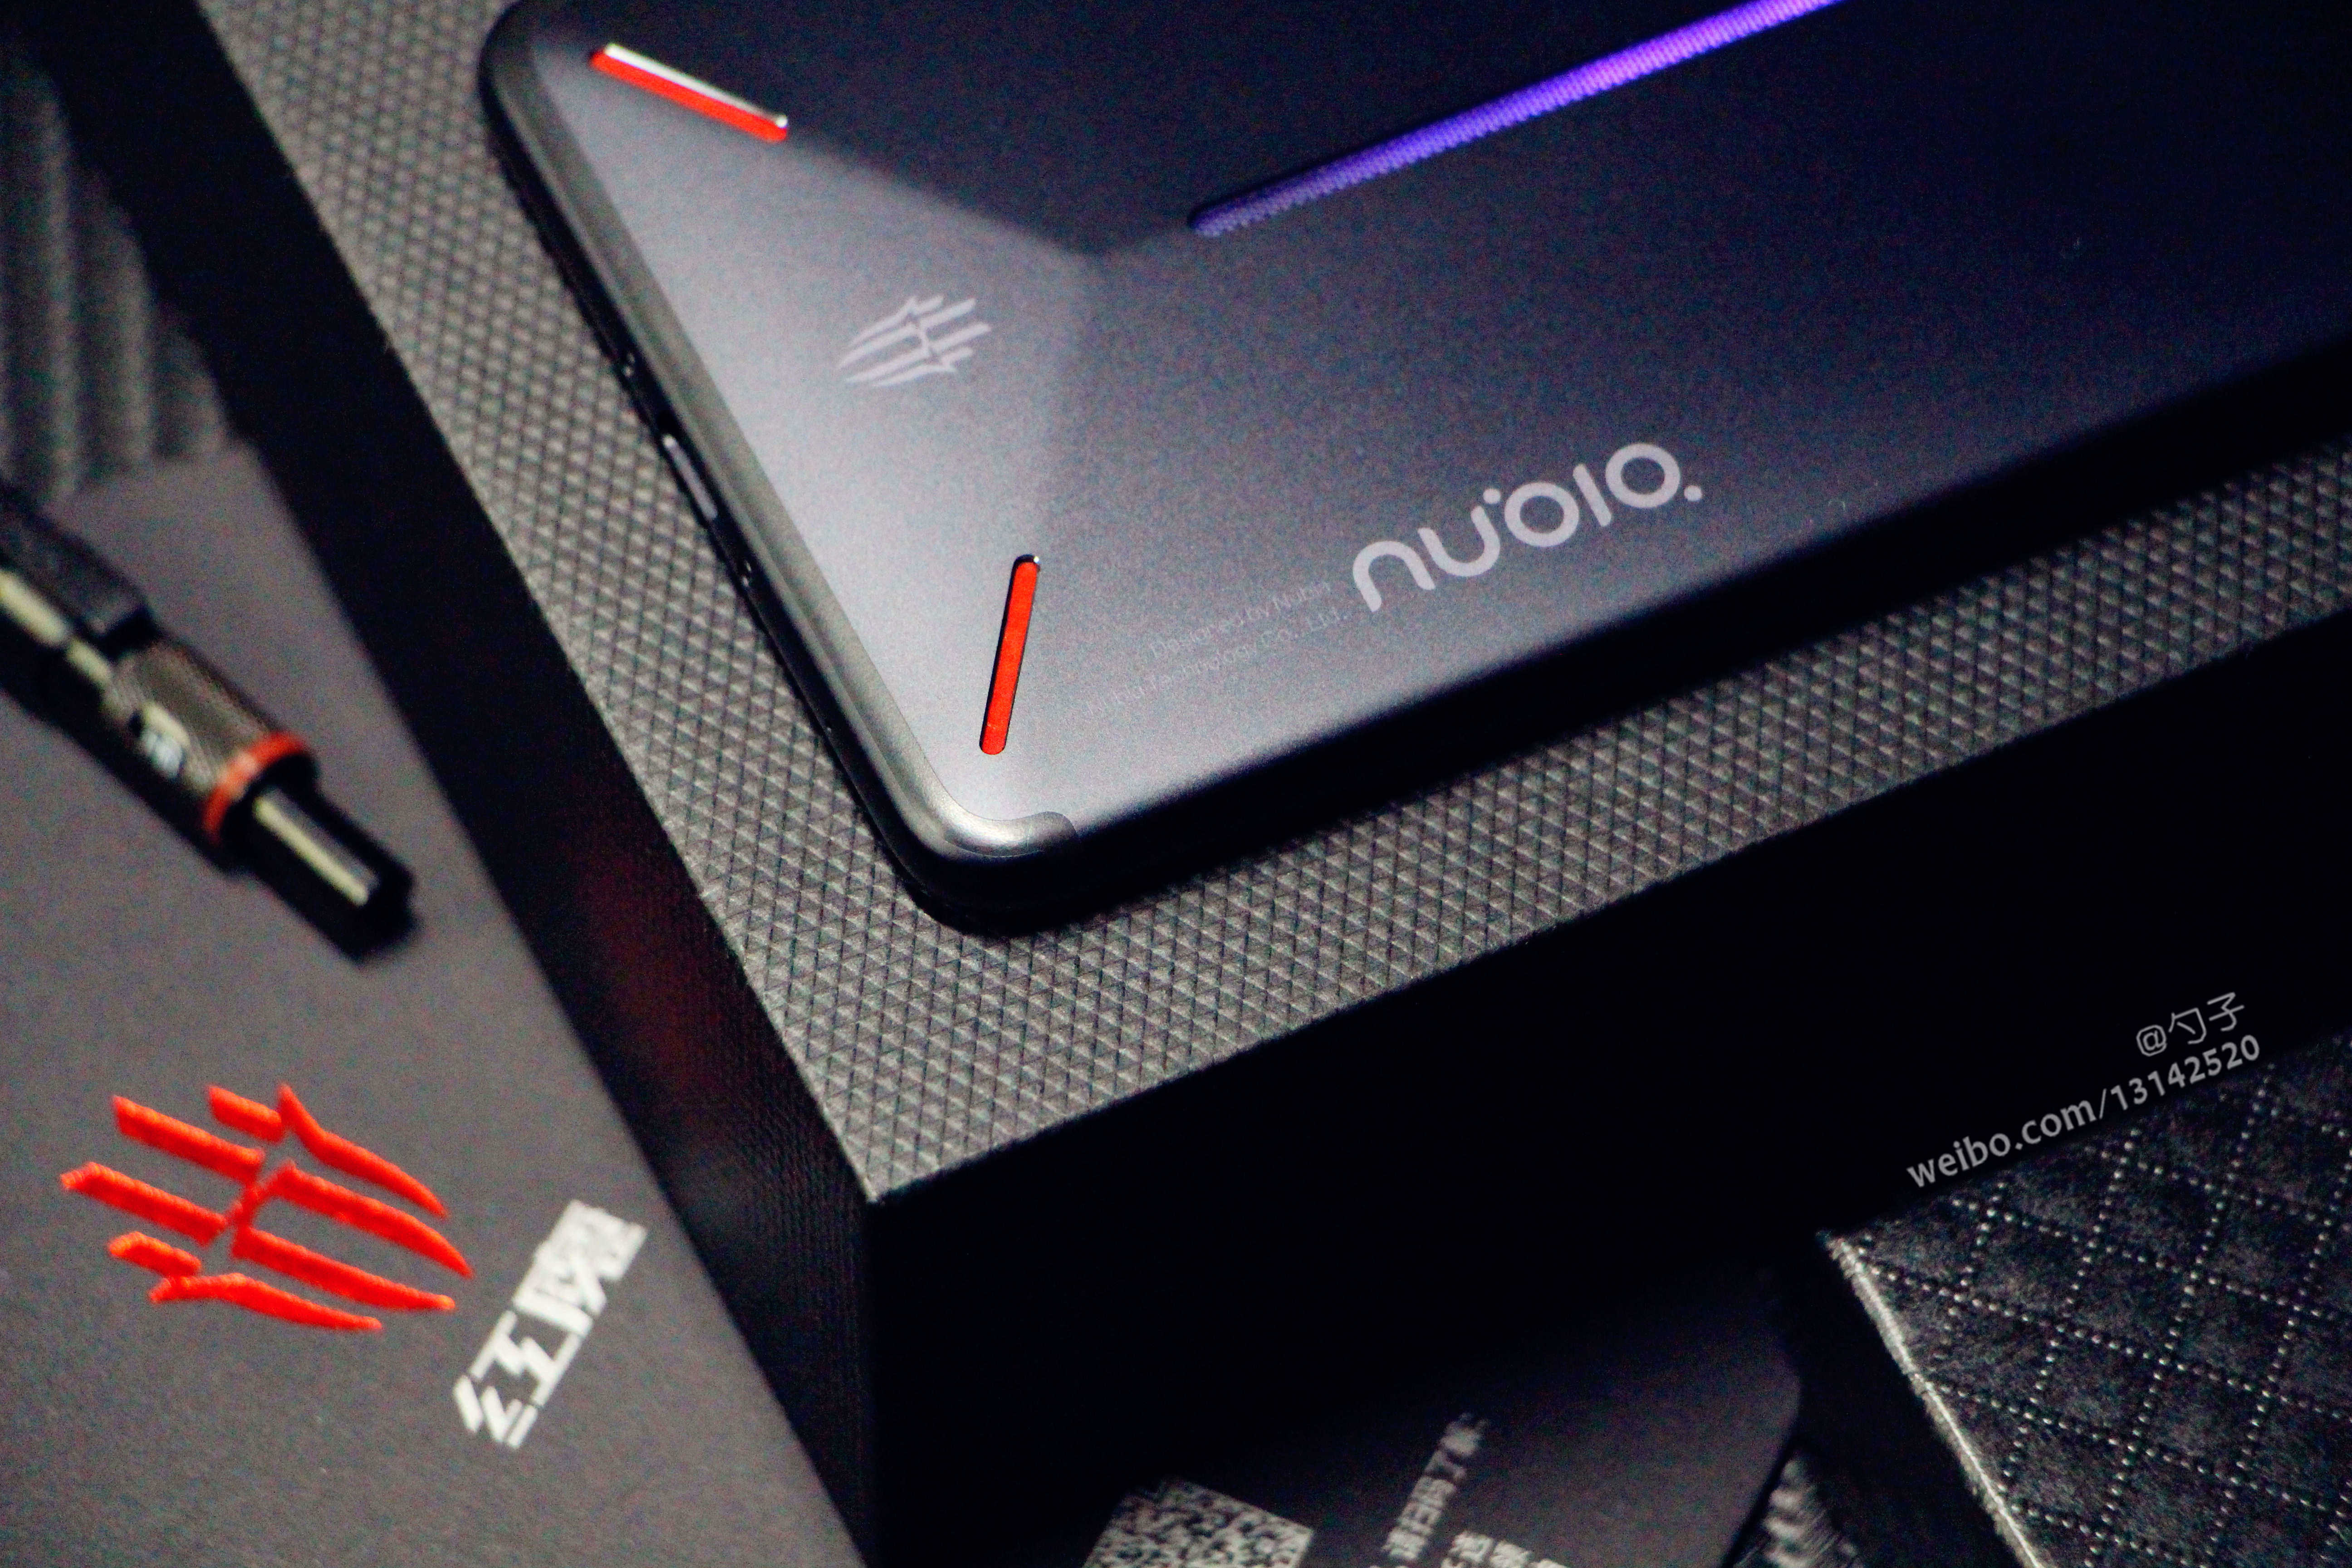 努比亚红魔电竞游戏手机,从设计到性能都帅到